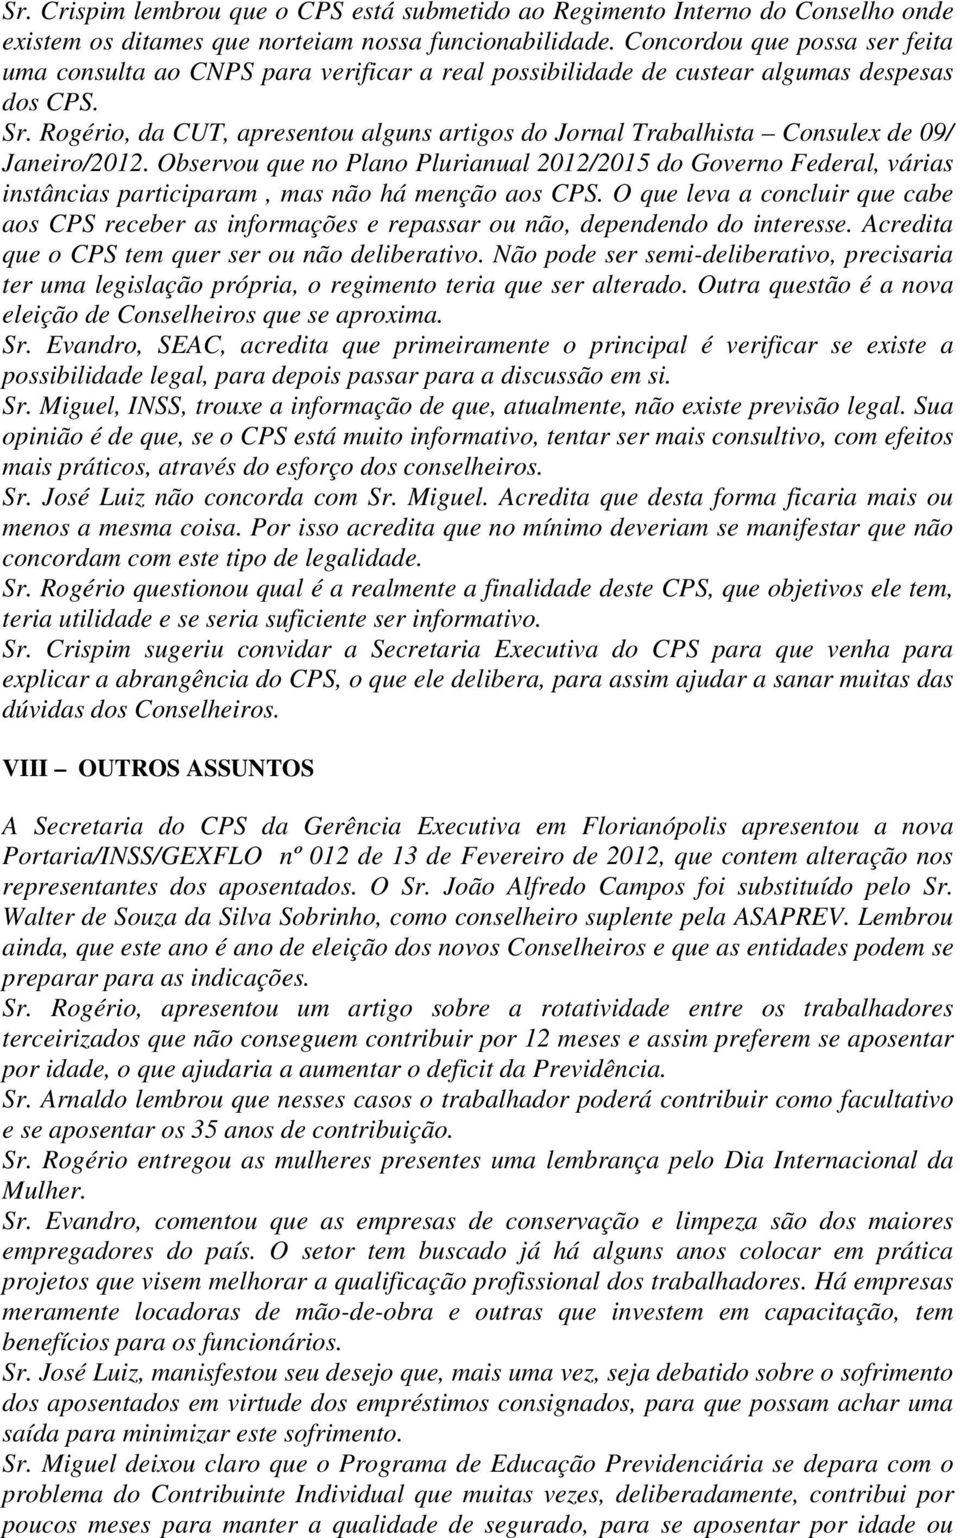 Rogério, da CUT, apresentou alguns artigos do Jornal Trabalhista Consulex de 09/ Janeiro/2012.